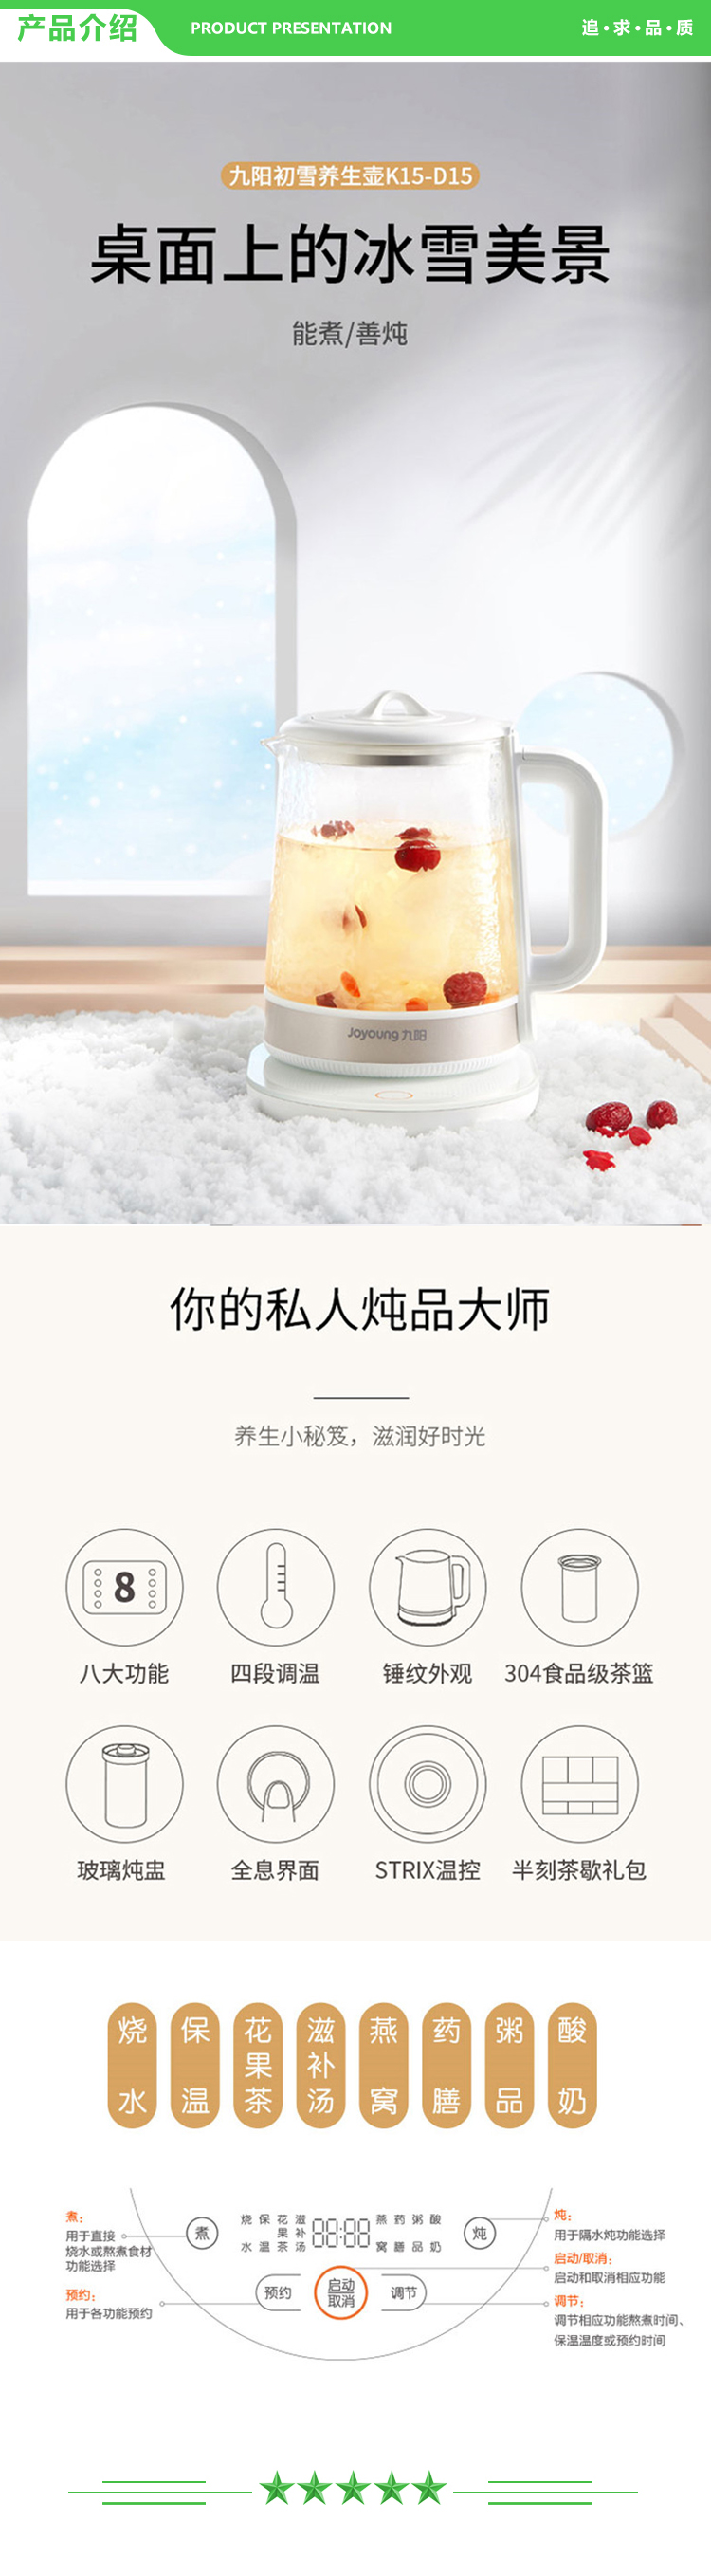 九阳 Joyoung K15-D15 养生壶锤纹玻璃煮茶炖煲开水煲电煮壶1.5升.jpg